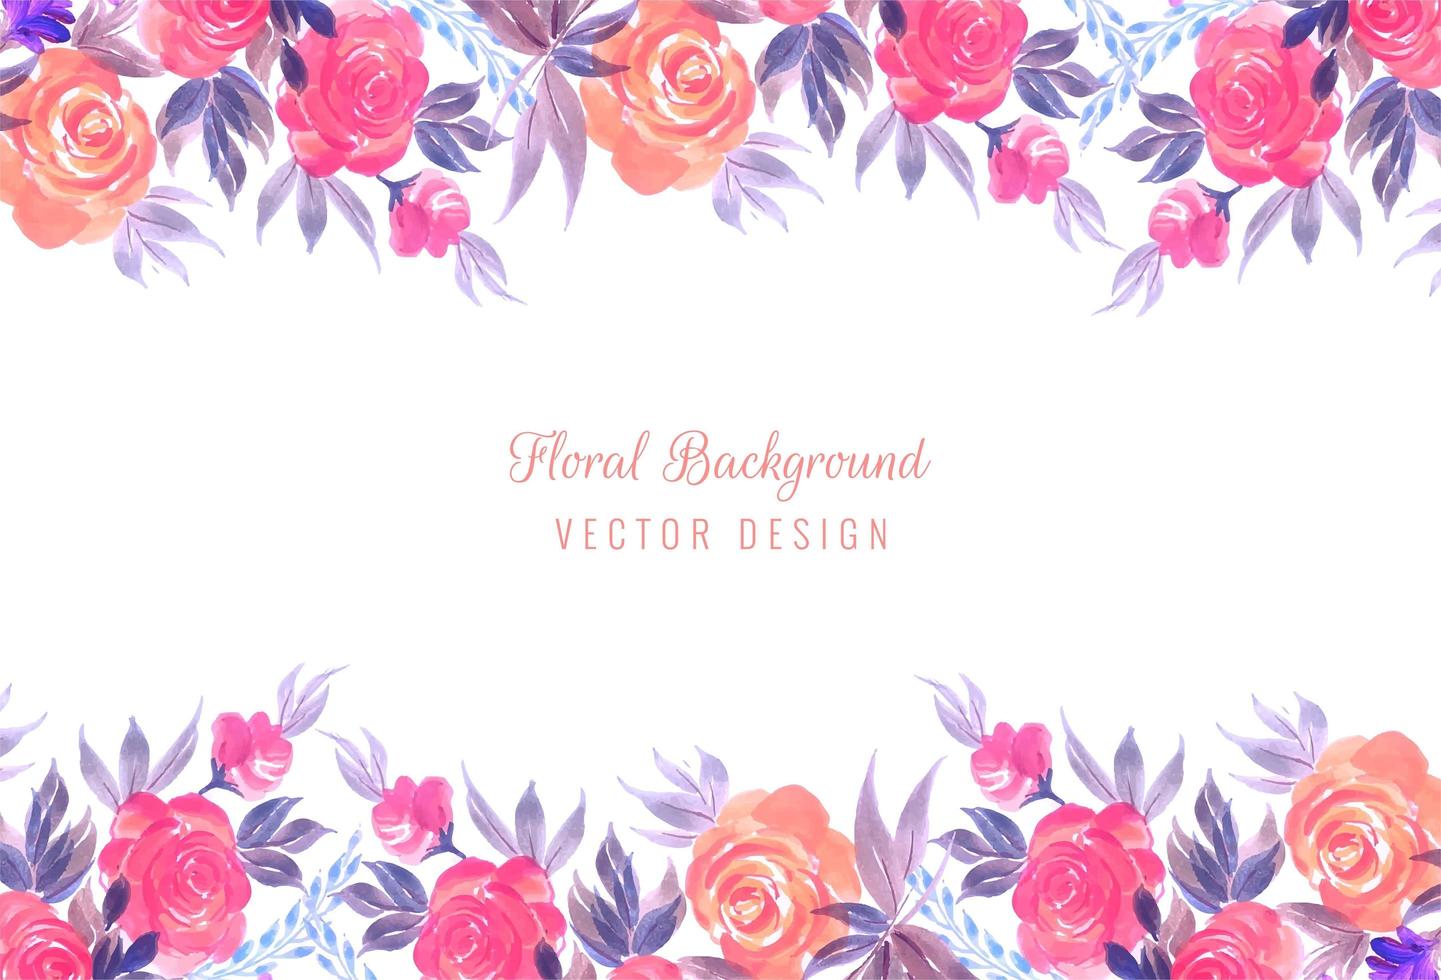 Diseño floral decorativo colorido de la tarjeta del marco de la boda vector